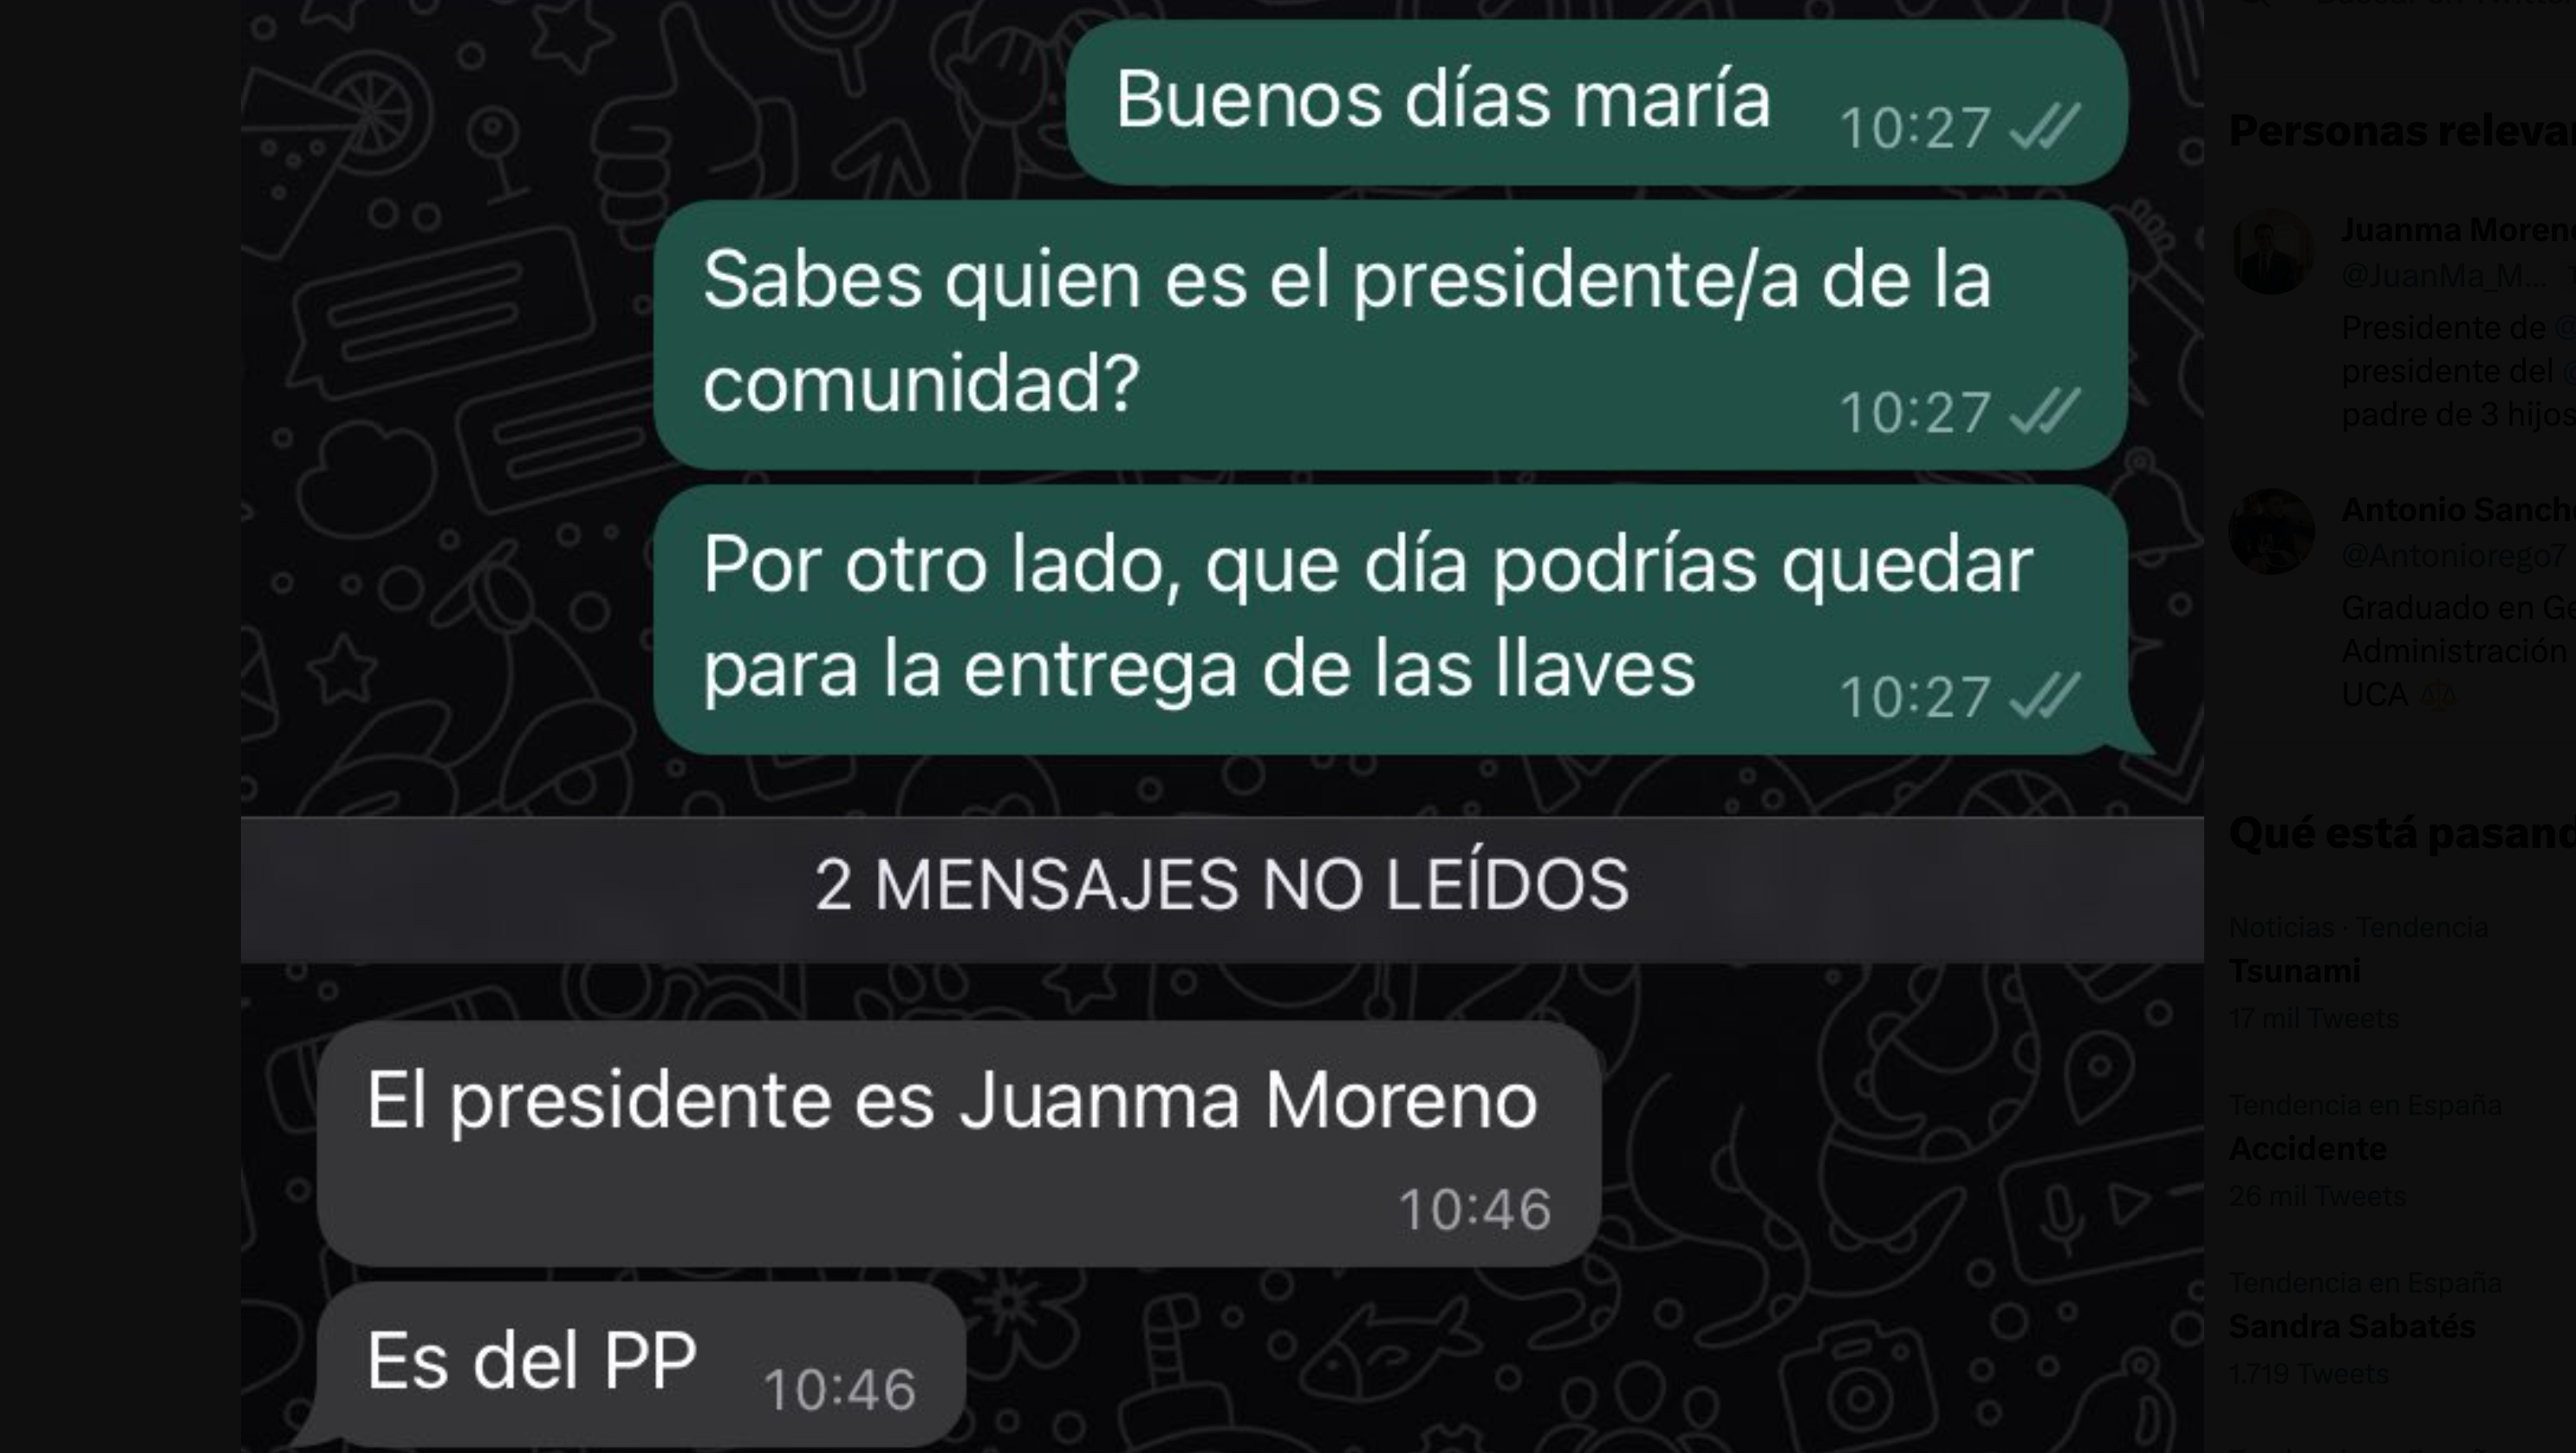 La divertidísima conversación de WhatsApp sobre la que ha tenido que responder Juanma Moreno.